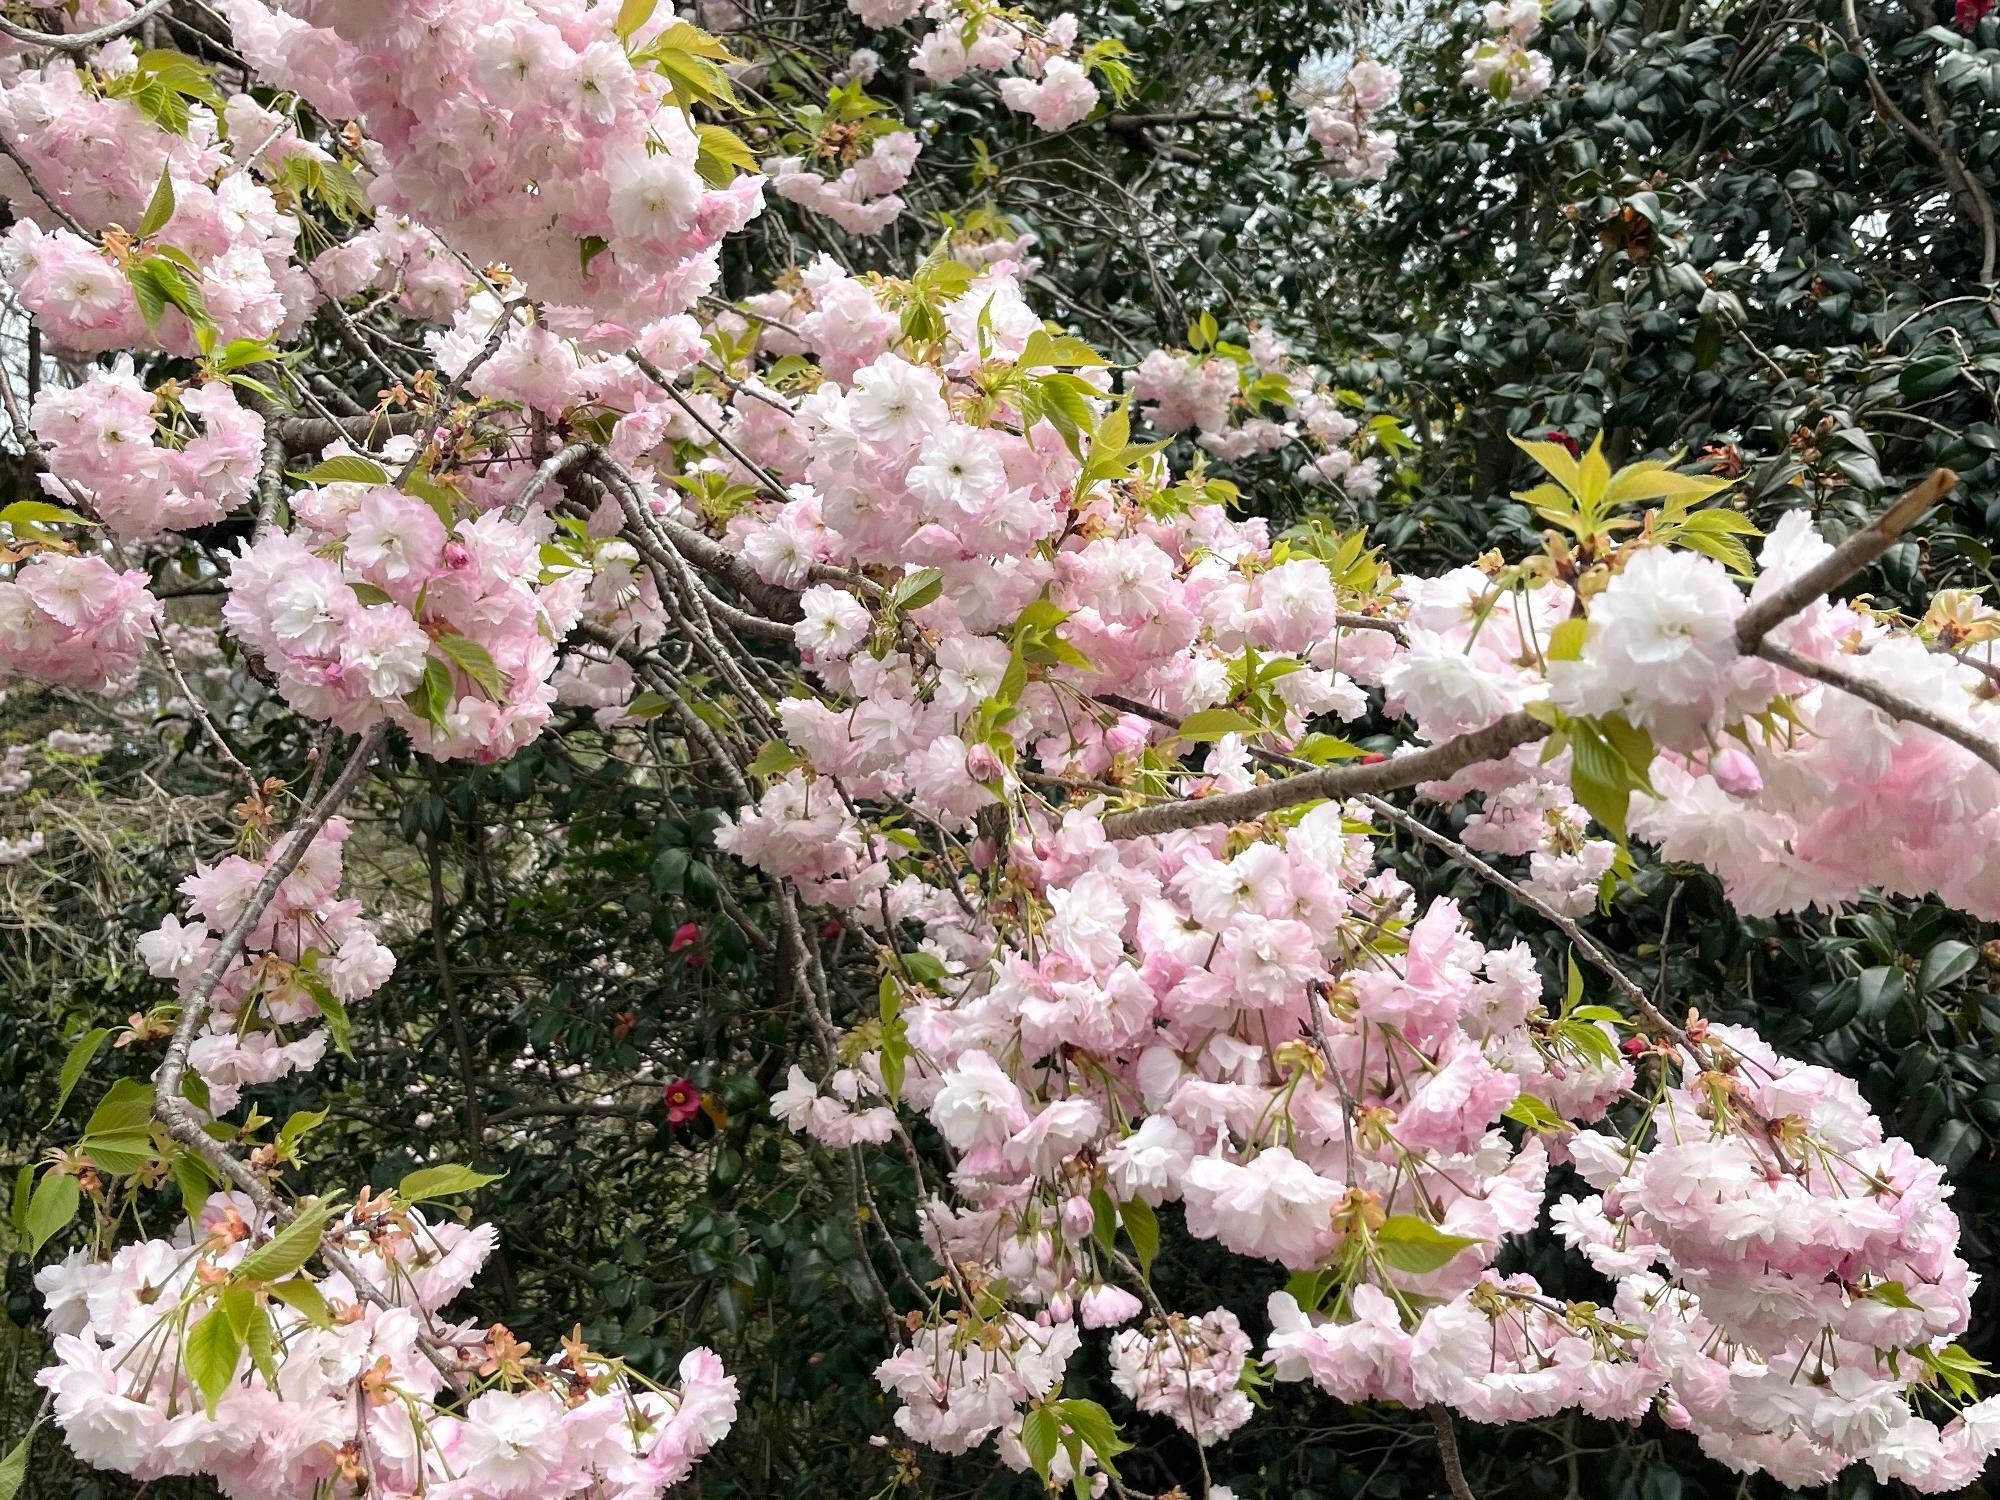 ▲ 春といえば、薄い桃色や桜色など花を連想させる'ピンク色'のイメージだ